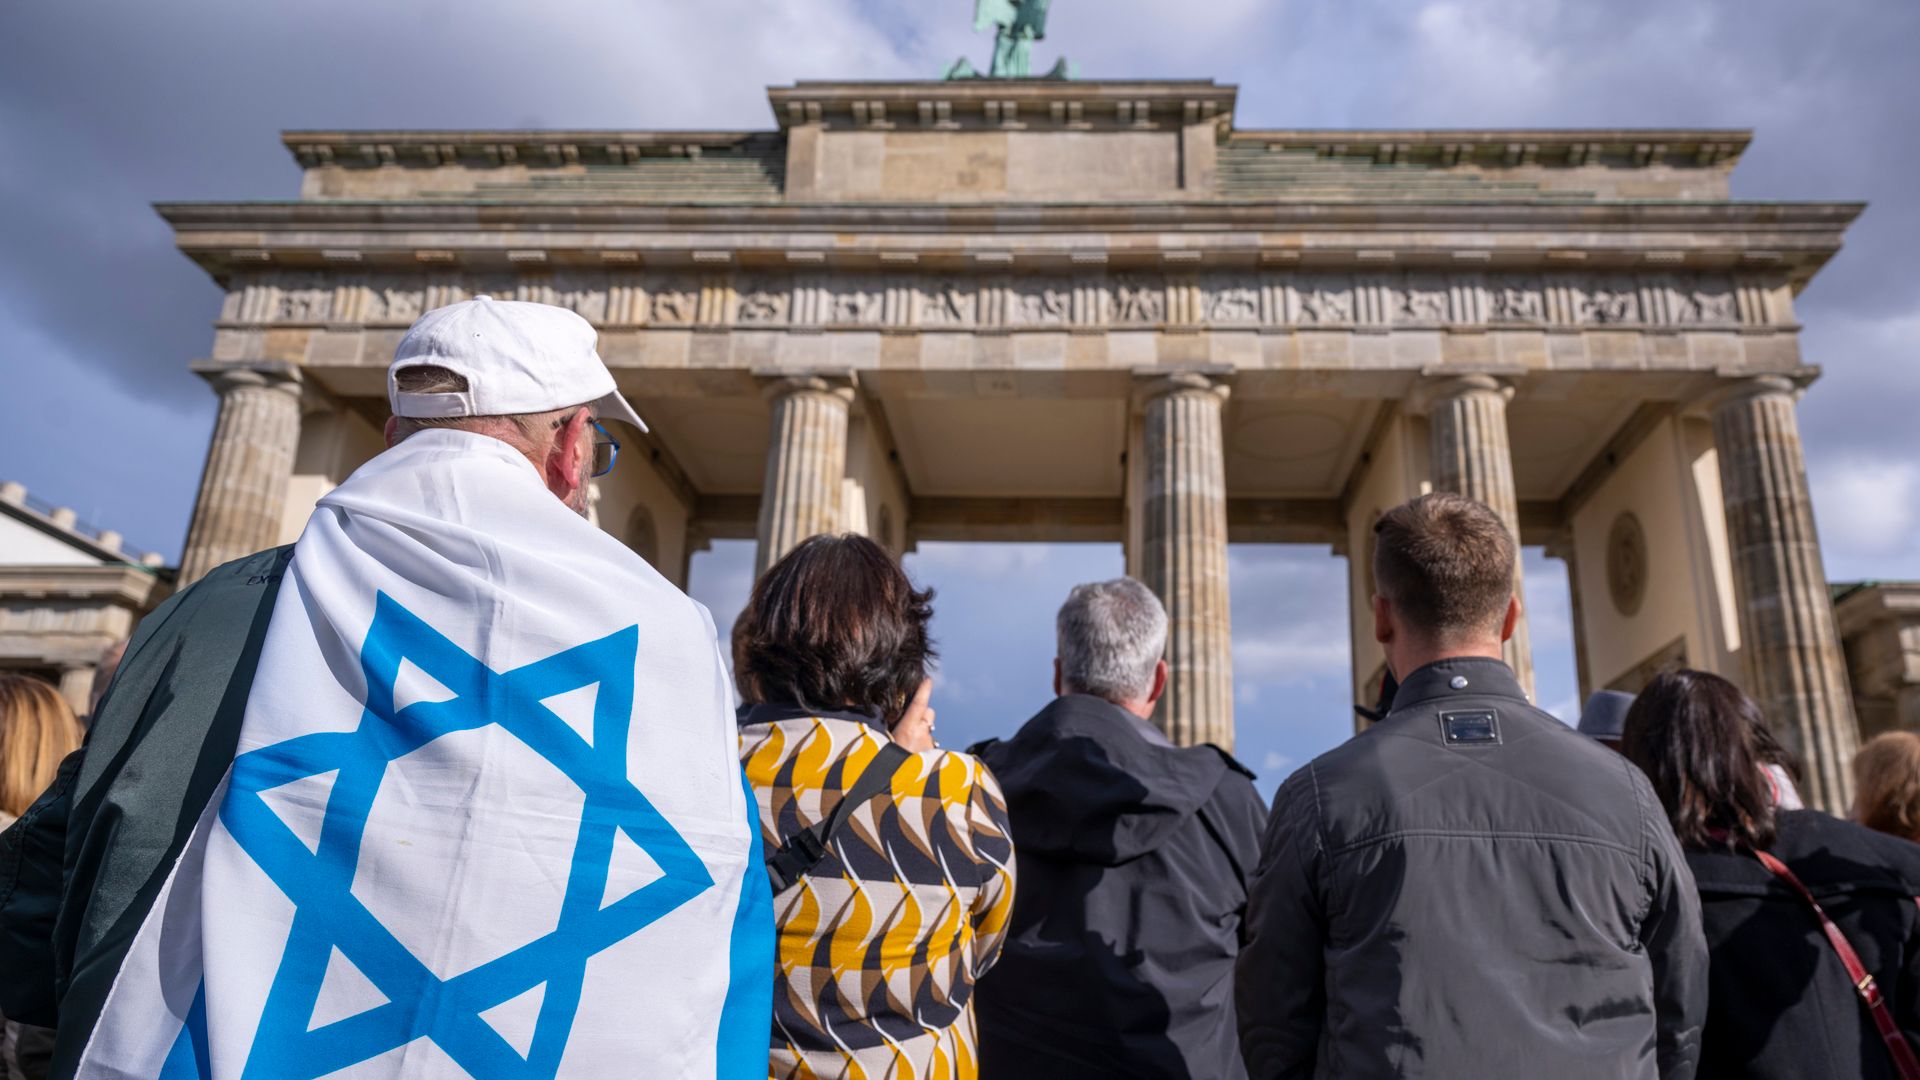 berlin-moabit: unbekannter schlägt mann mit israelflagge die faust ins gesicht